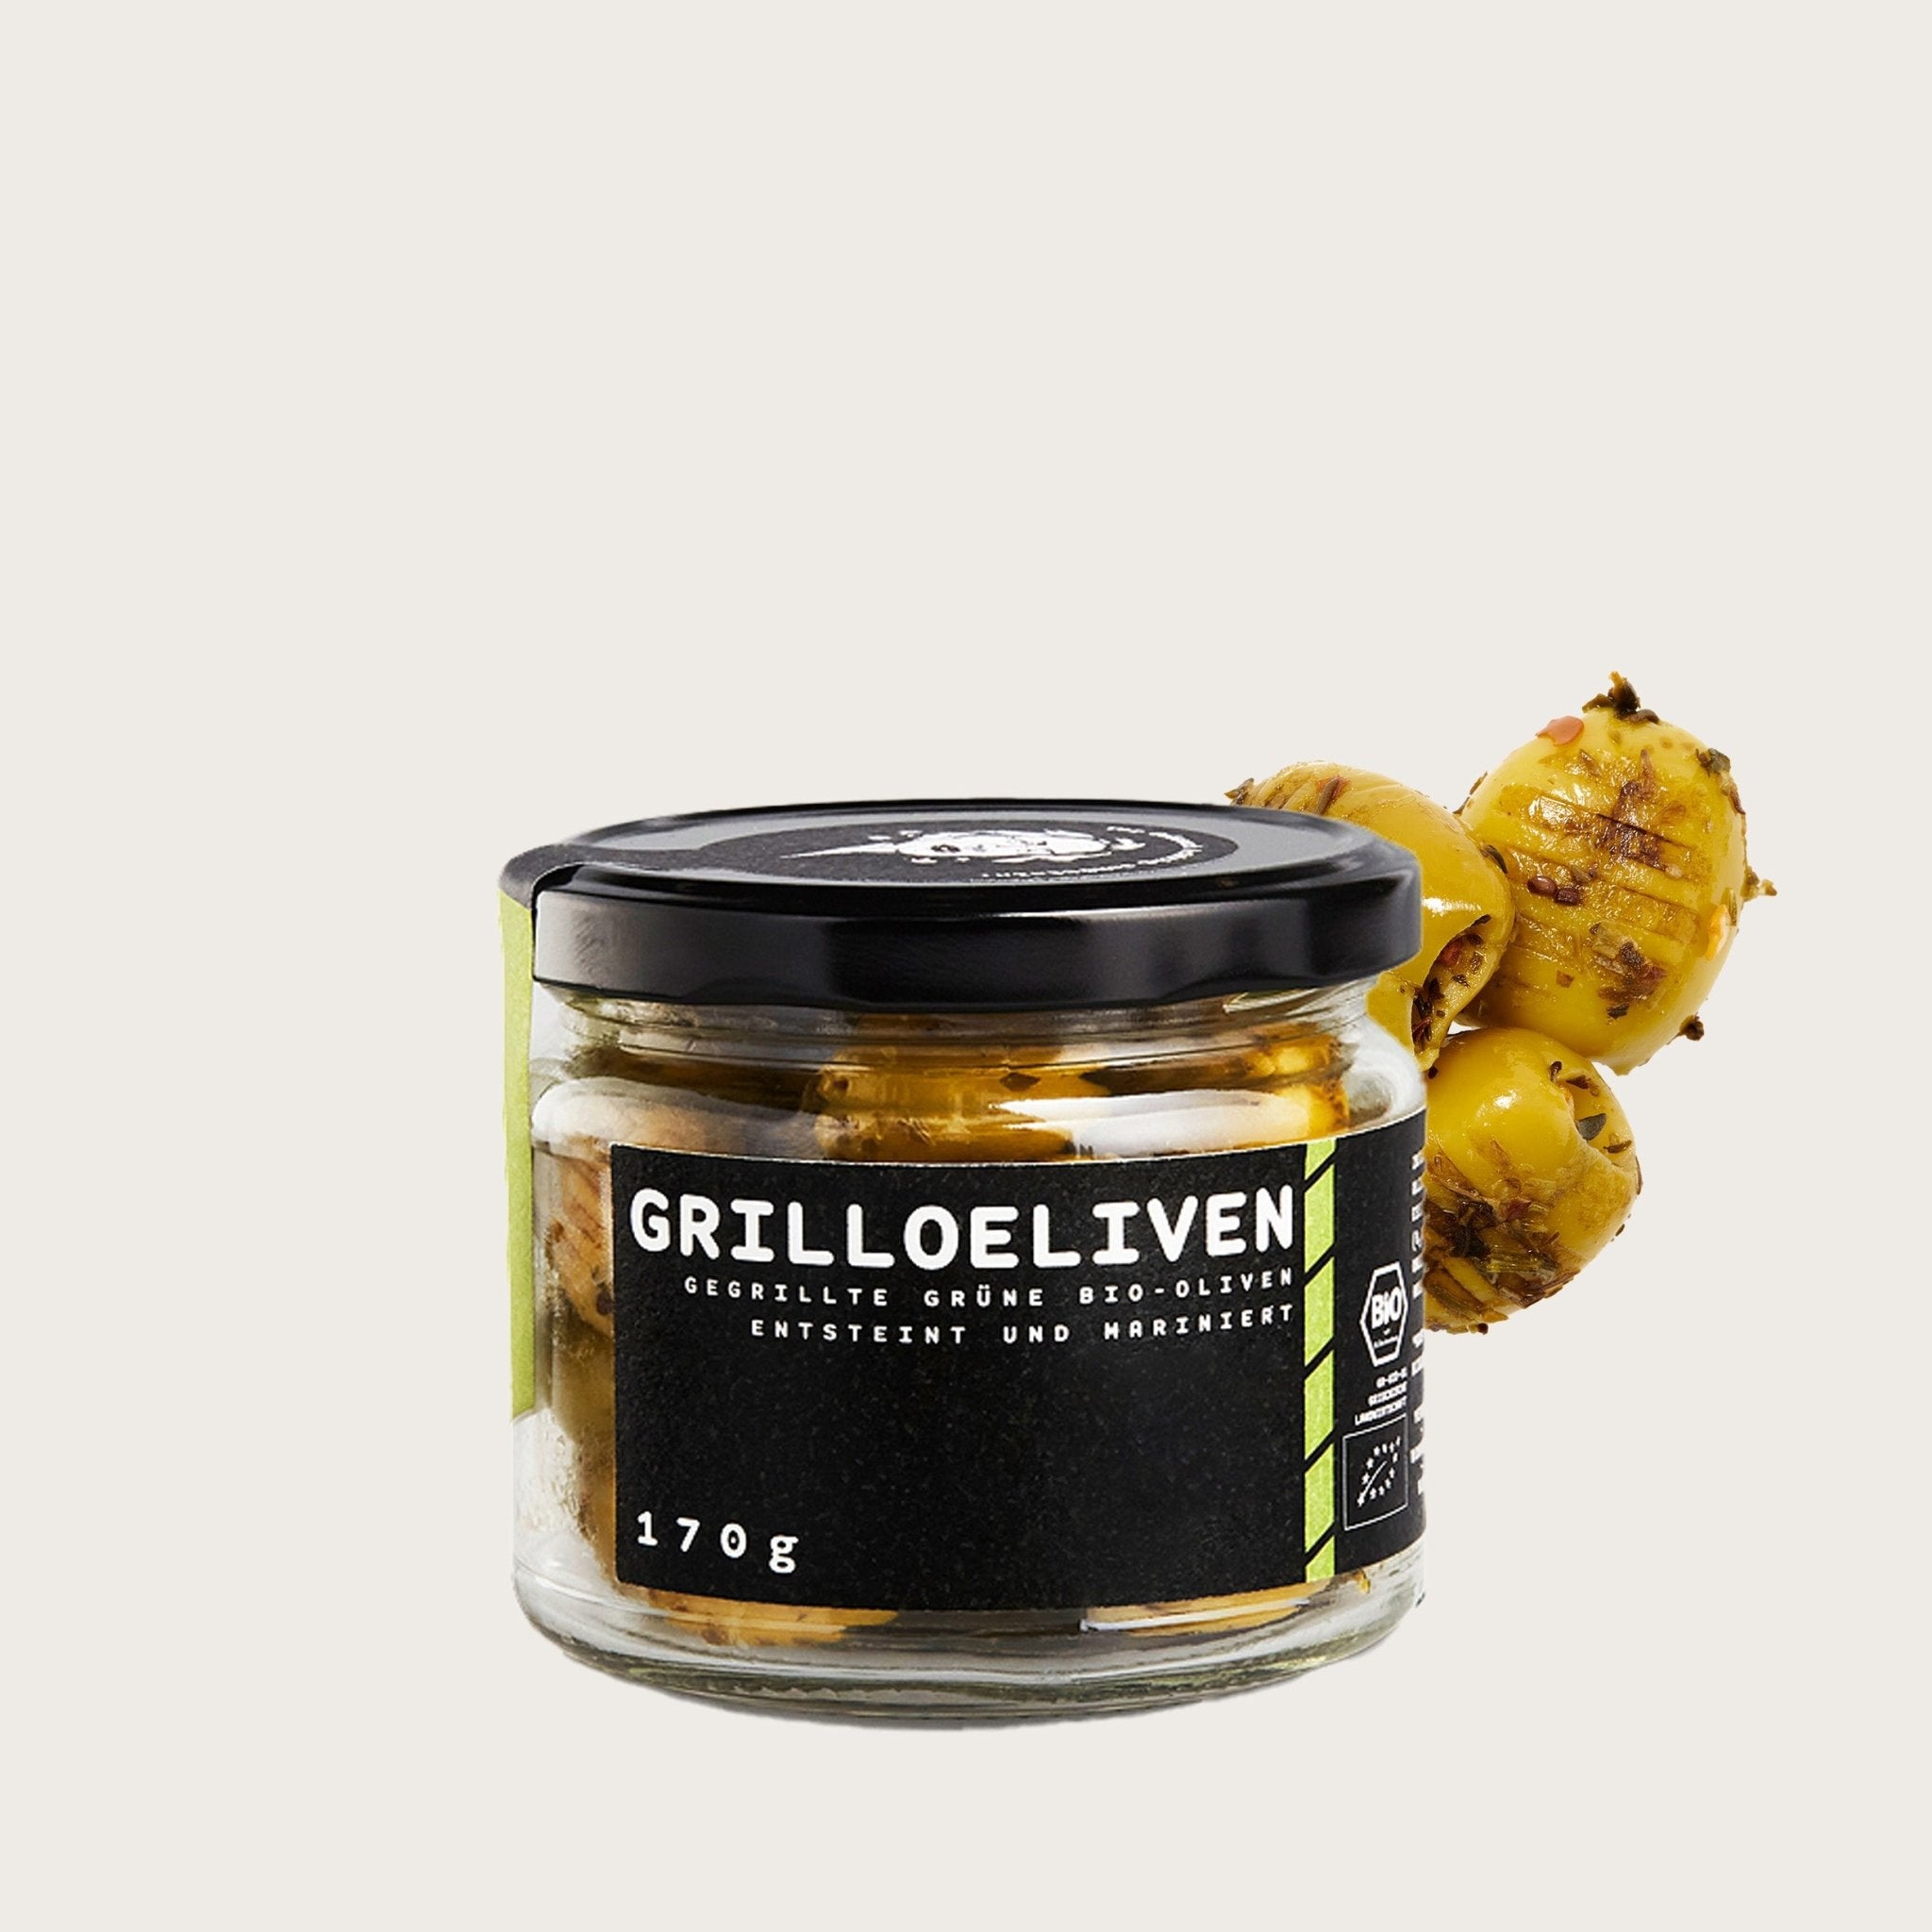 GRILLOELIVEN 170 g - Gegrillte grüne Bio Oliven - OEL - Griechische Produkte und Olivenöl - Bestandsartikel red. MWST (7%) - Paraskevopoulos A.E.